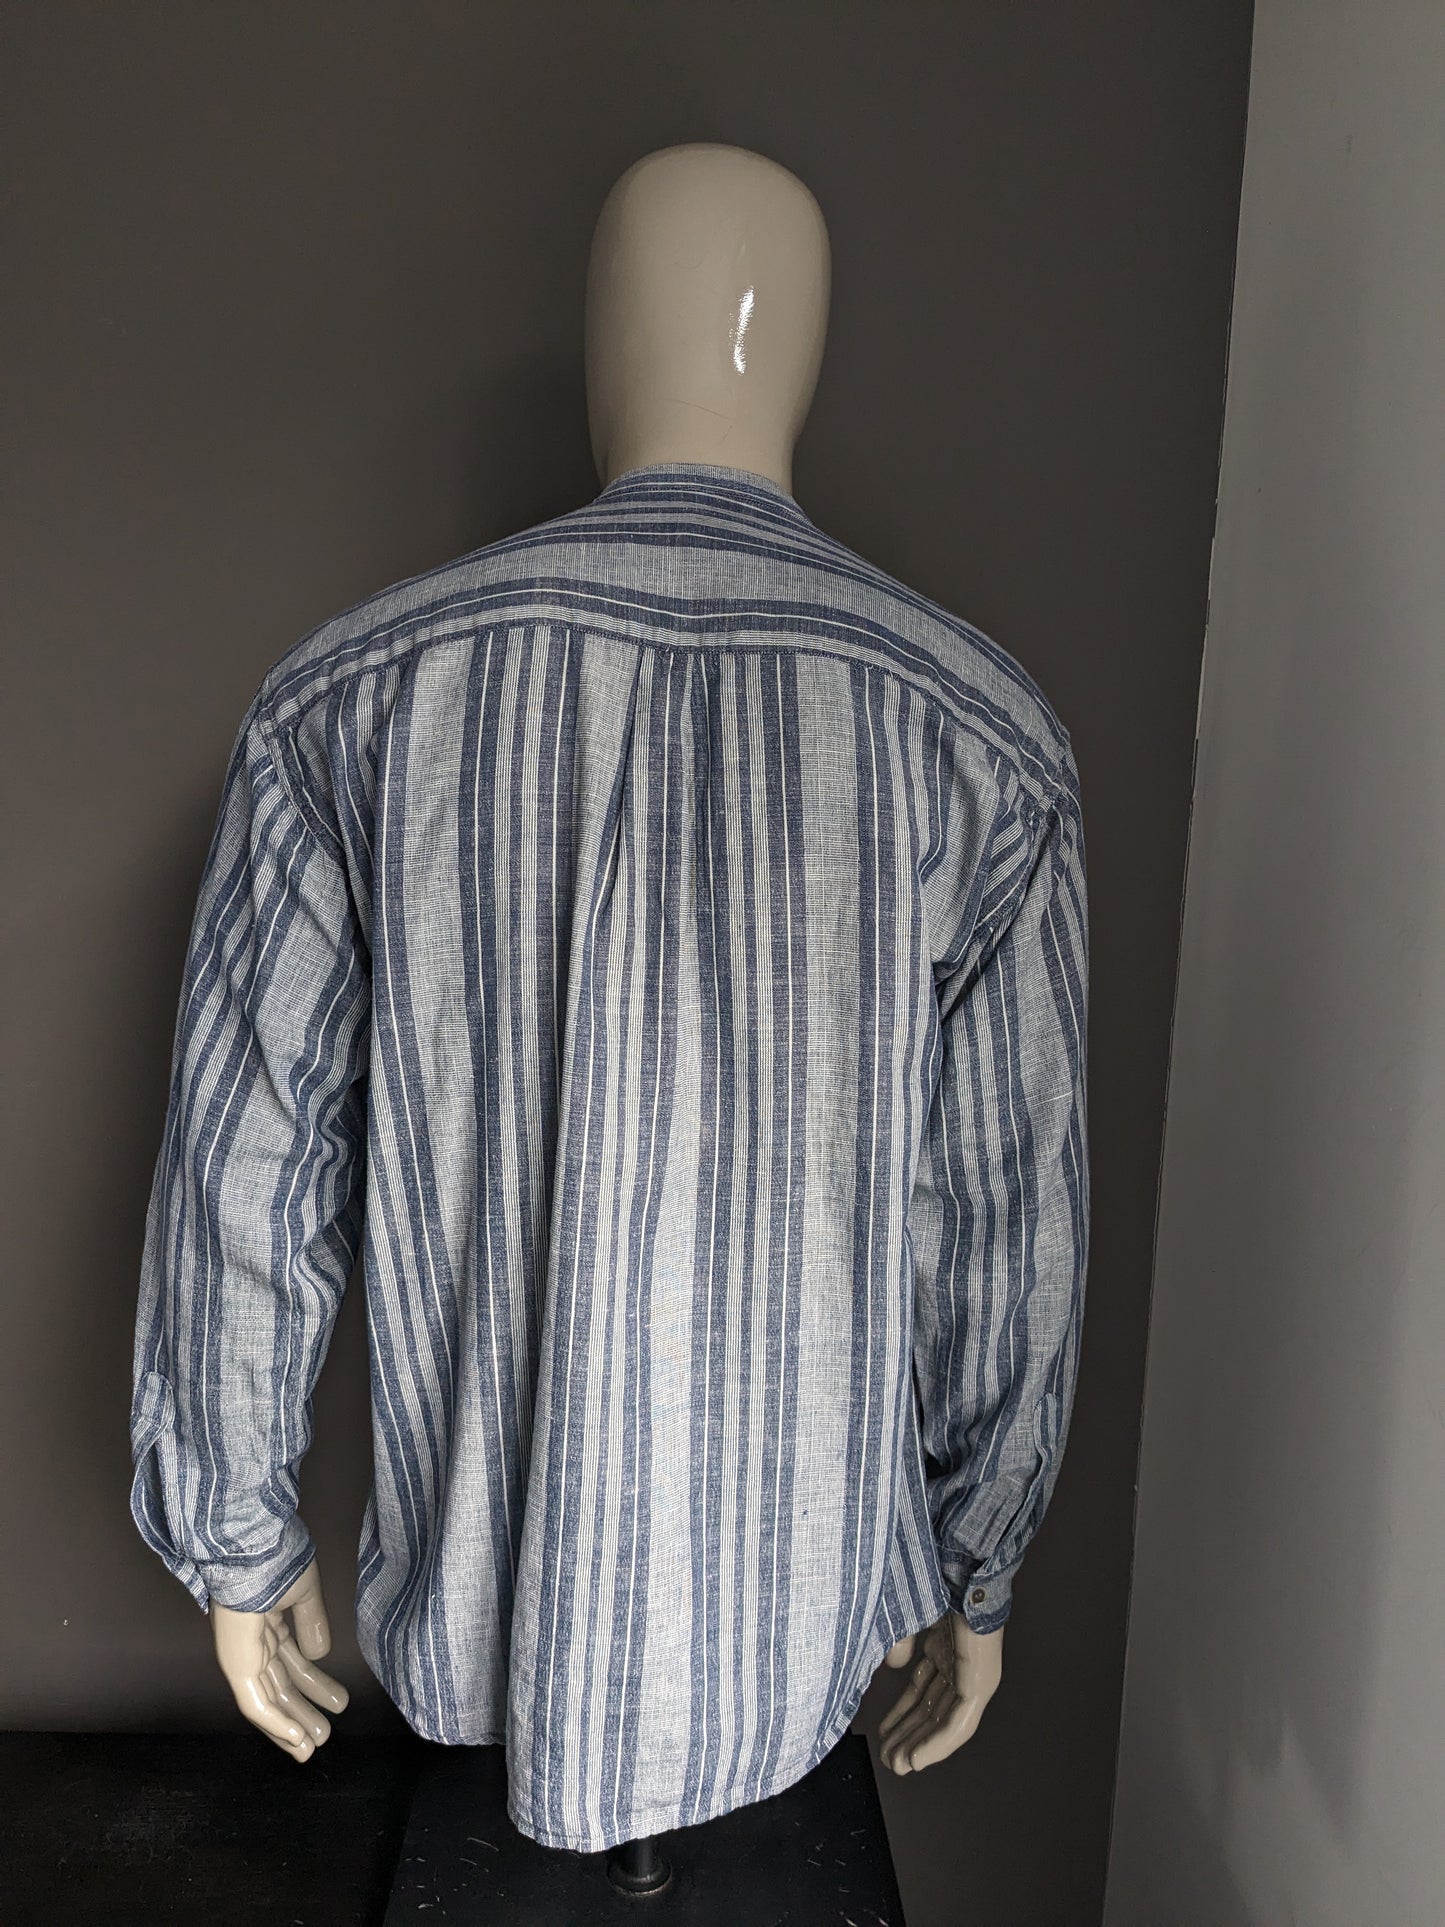 Vintage Casa Blanca -Hemd aufrecht / Bauern / Mao -Kragen. Blau grau gestreift. Größe xl.